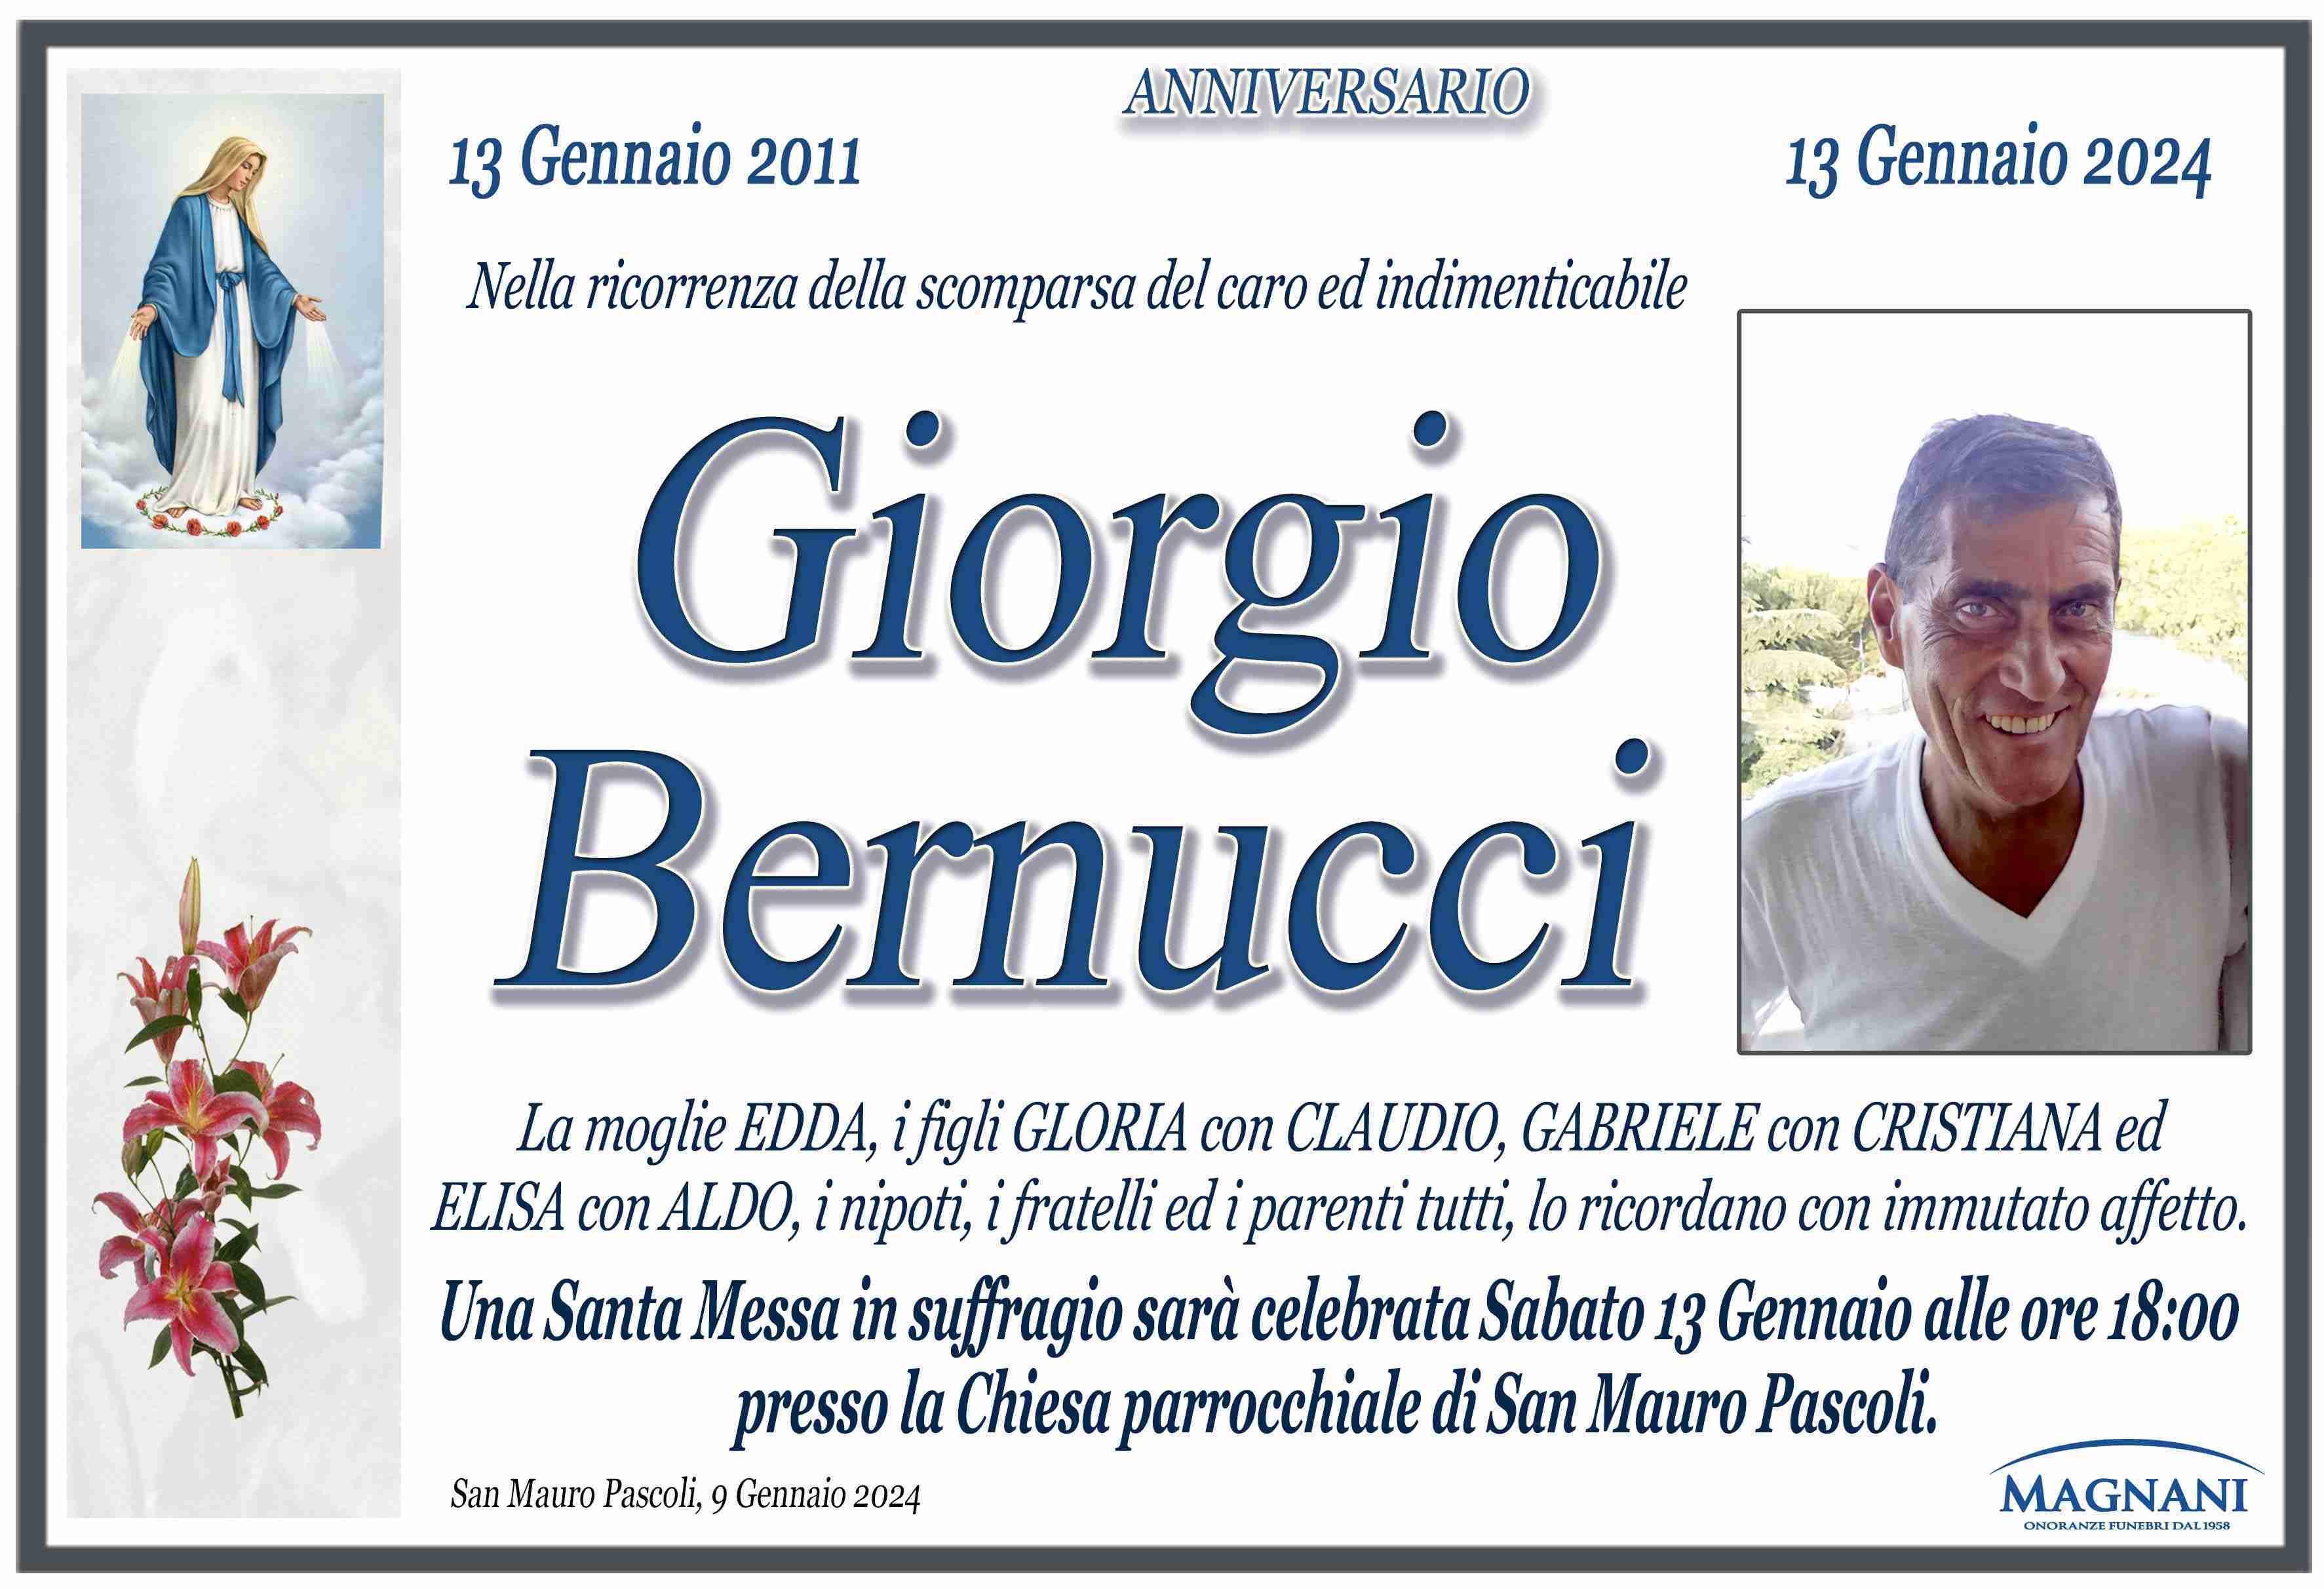 Giorgio Bernucci